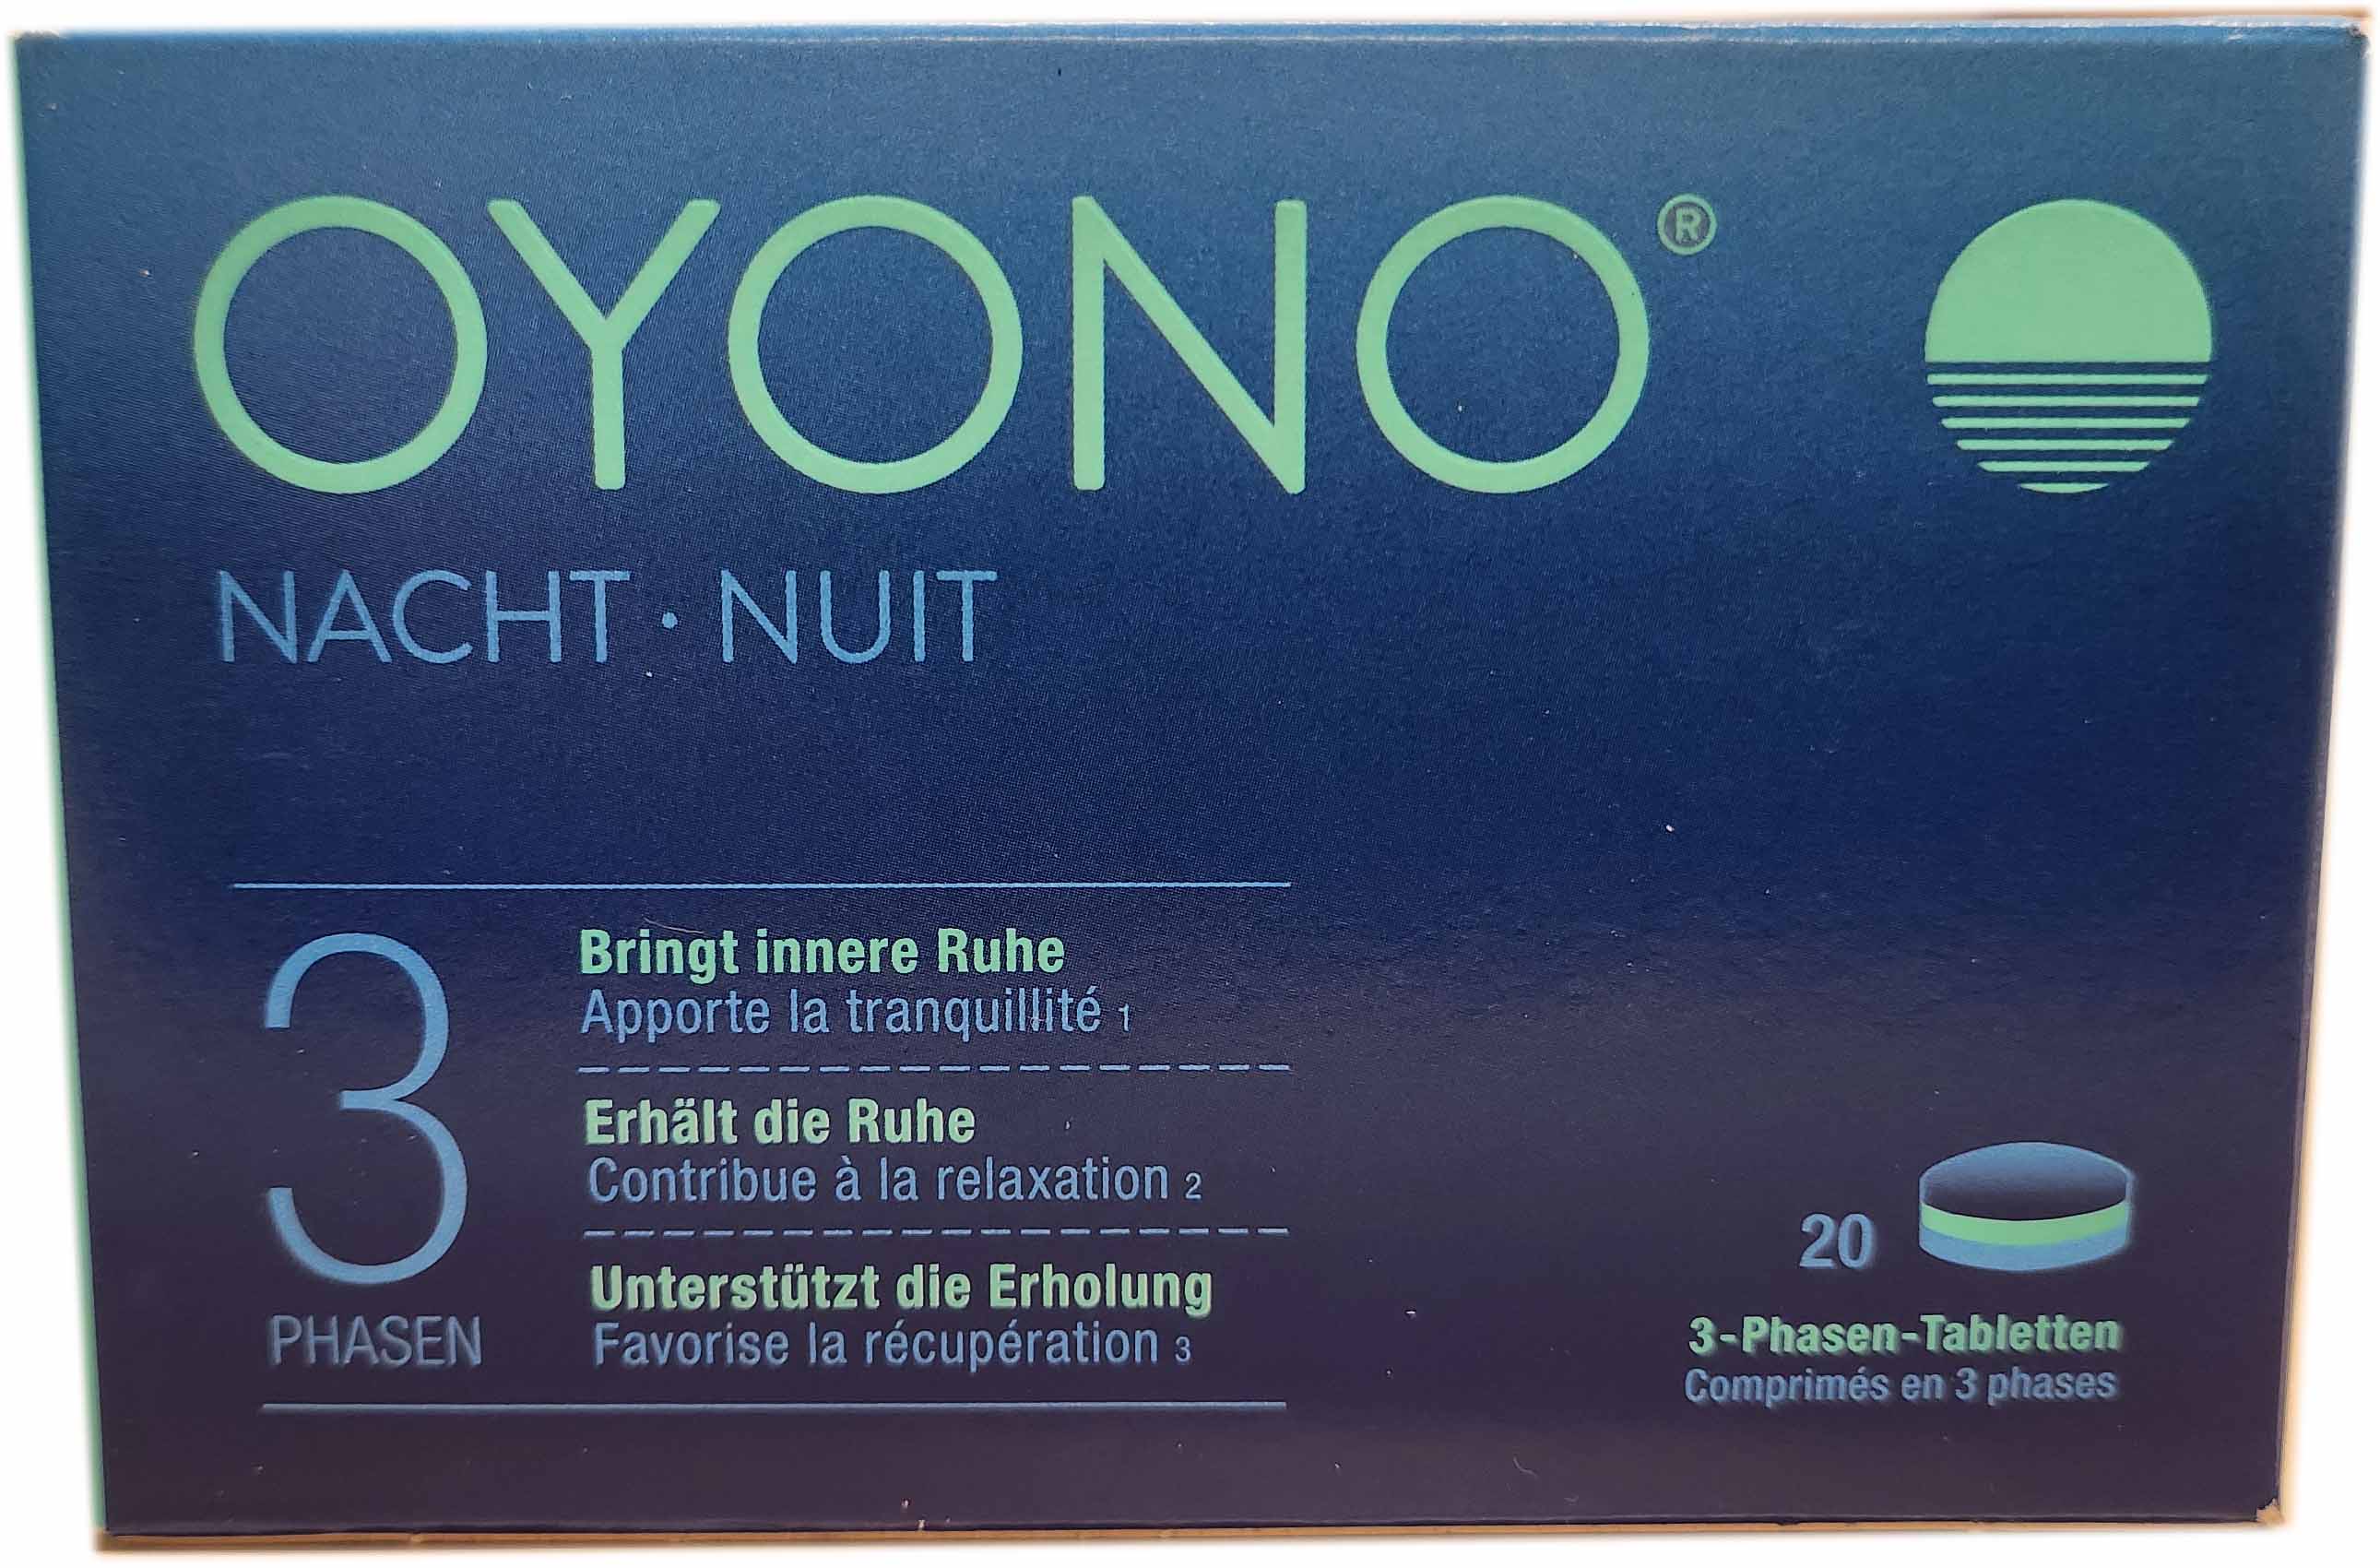 OYONO Nacht 3 - Phasen - Tabletten 20 Stk.